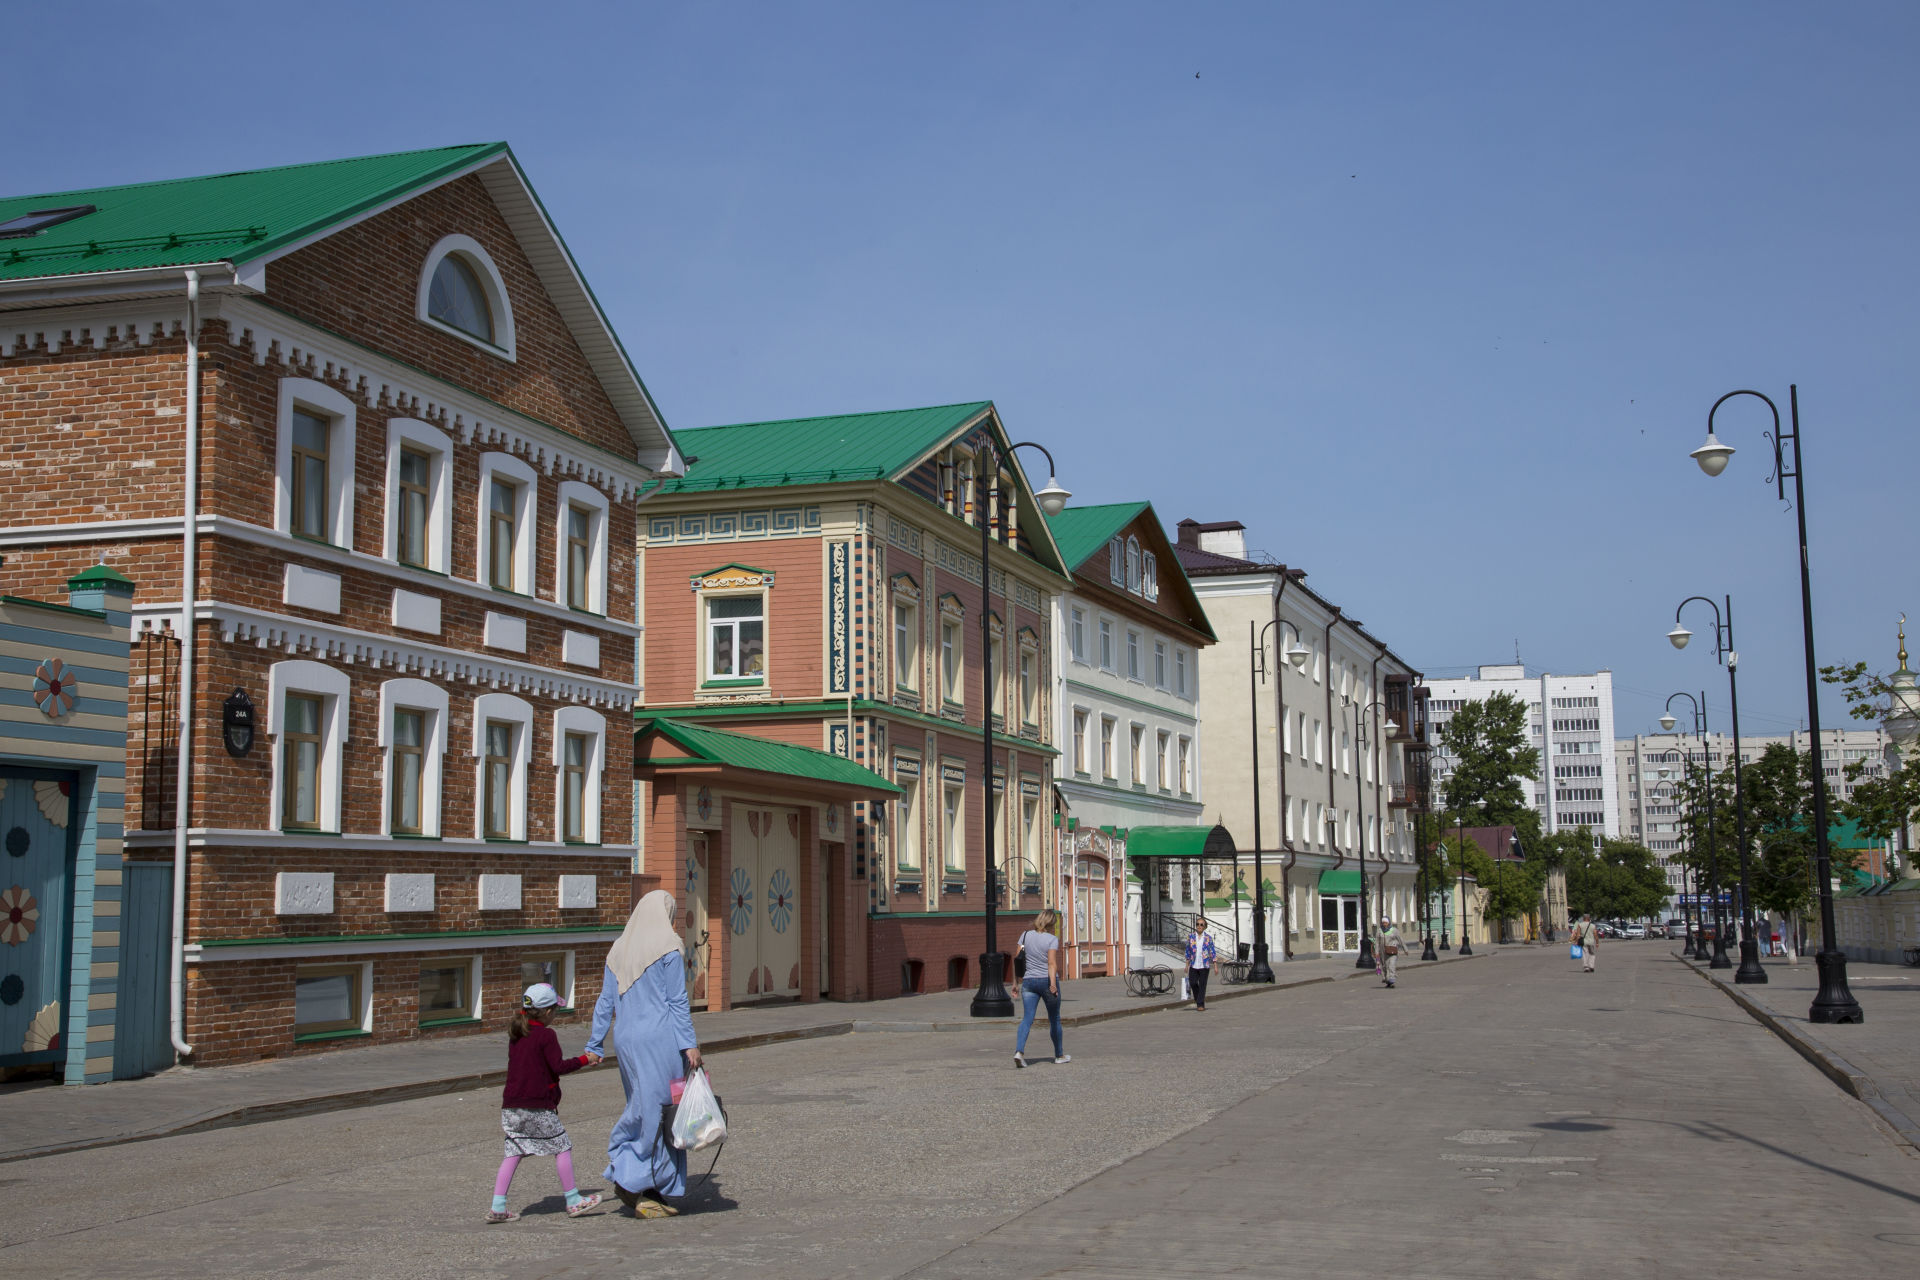 Казанның тарихи үзәге төзелеш үзгәрешләре кичерәчәк